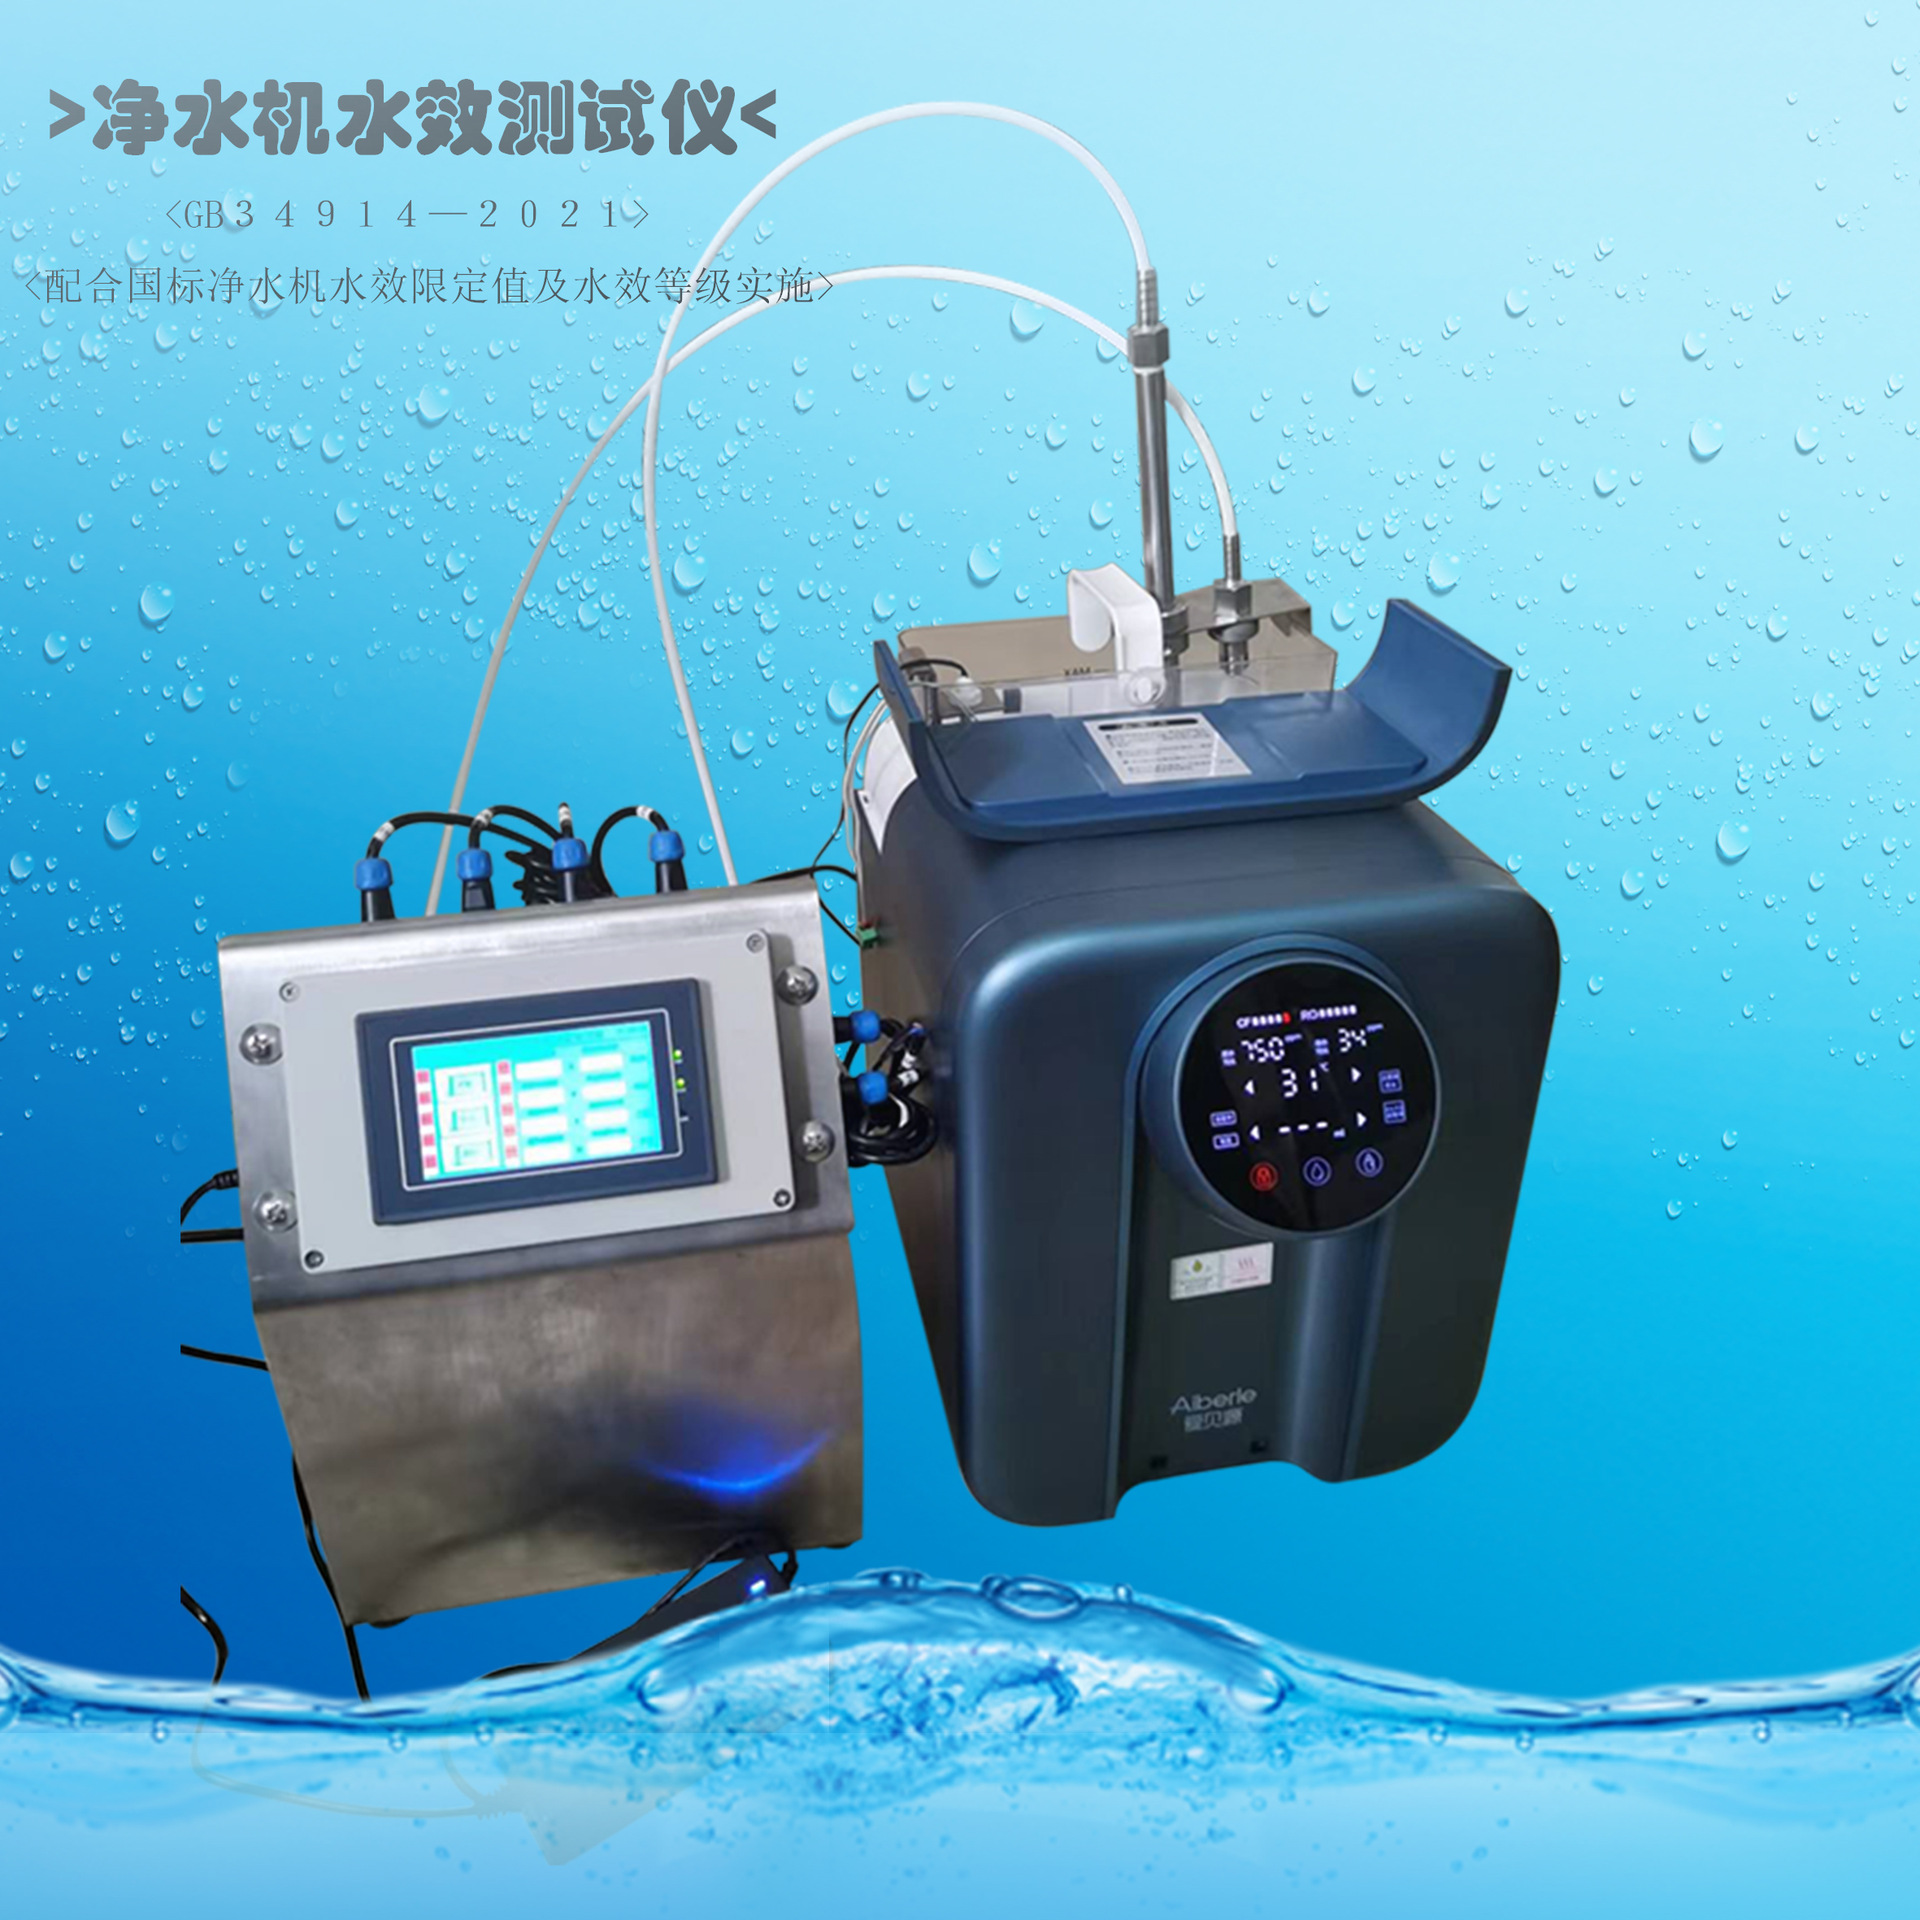 水效测试机 净水机水效测试仪 水效测试设备 小型净水机 广东水效测试机